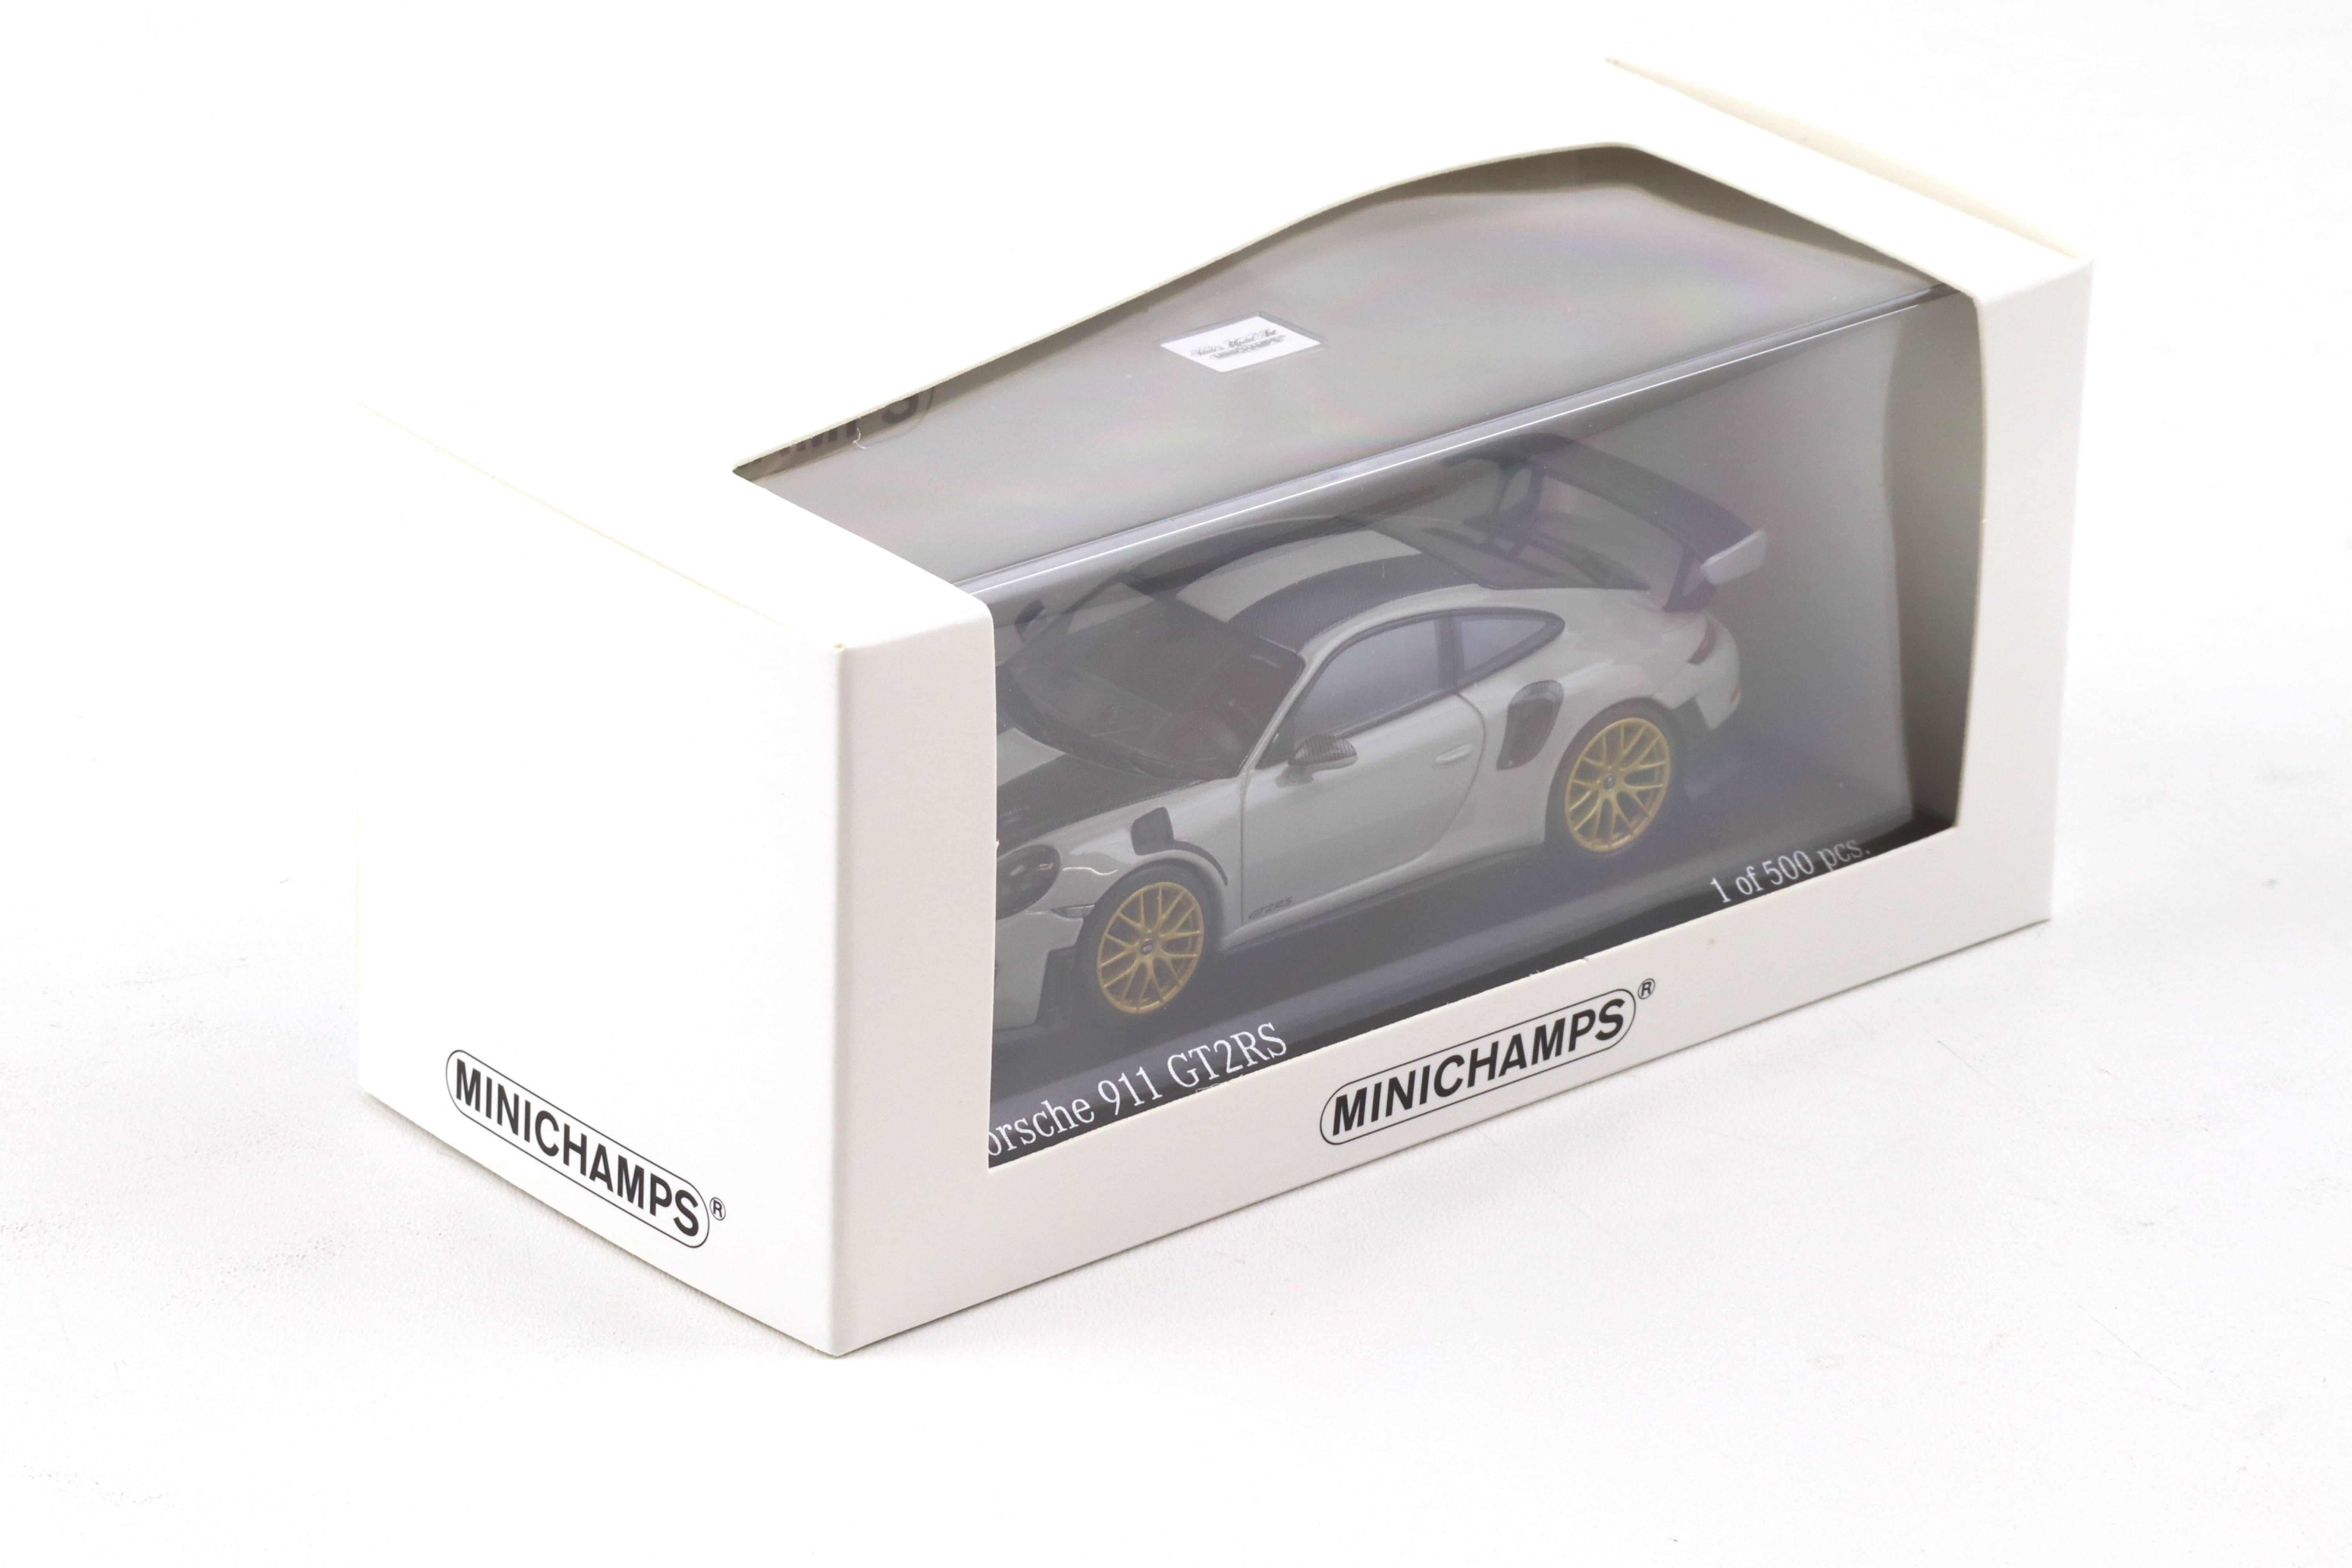 1:43 Minichamps Porsche 911 (991.2) GT2 RS Weissach Package 2018 chalk/ gold wheels